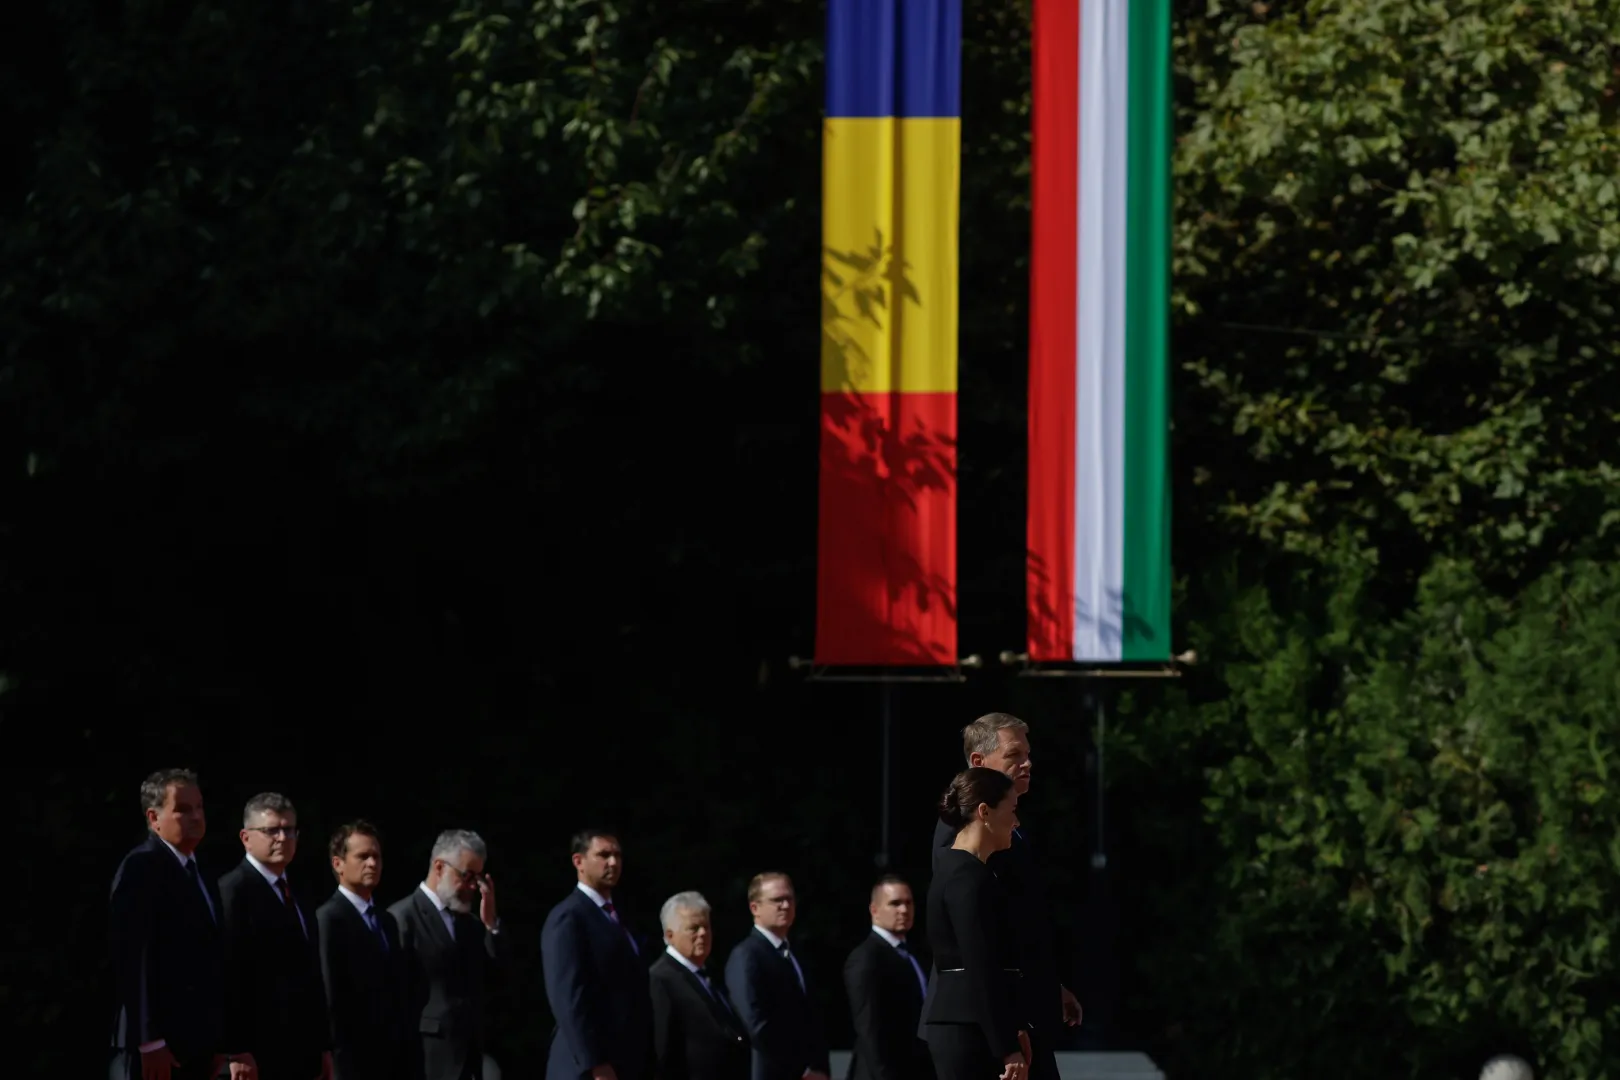 Klaus Iohannis államfő Novák Katalin magyar köztársasági elnököt fogadja a bukaresti Cotroceni-palotában, 2022. szeptember 7-én – George Călin / Inquam Photos